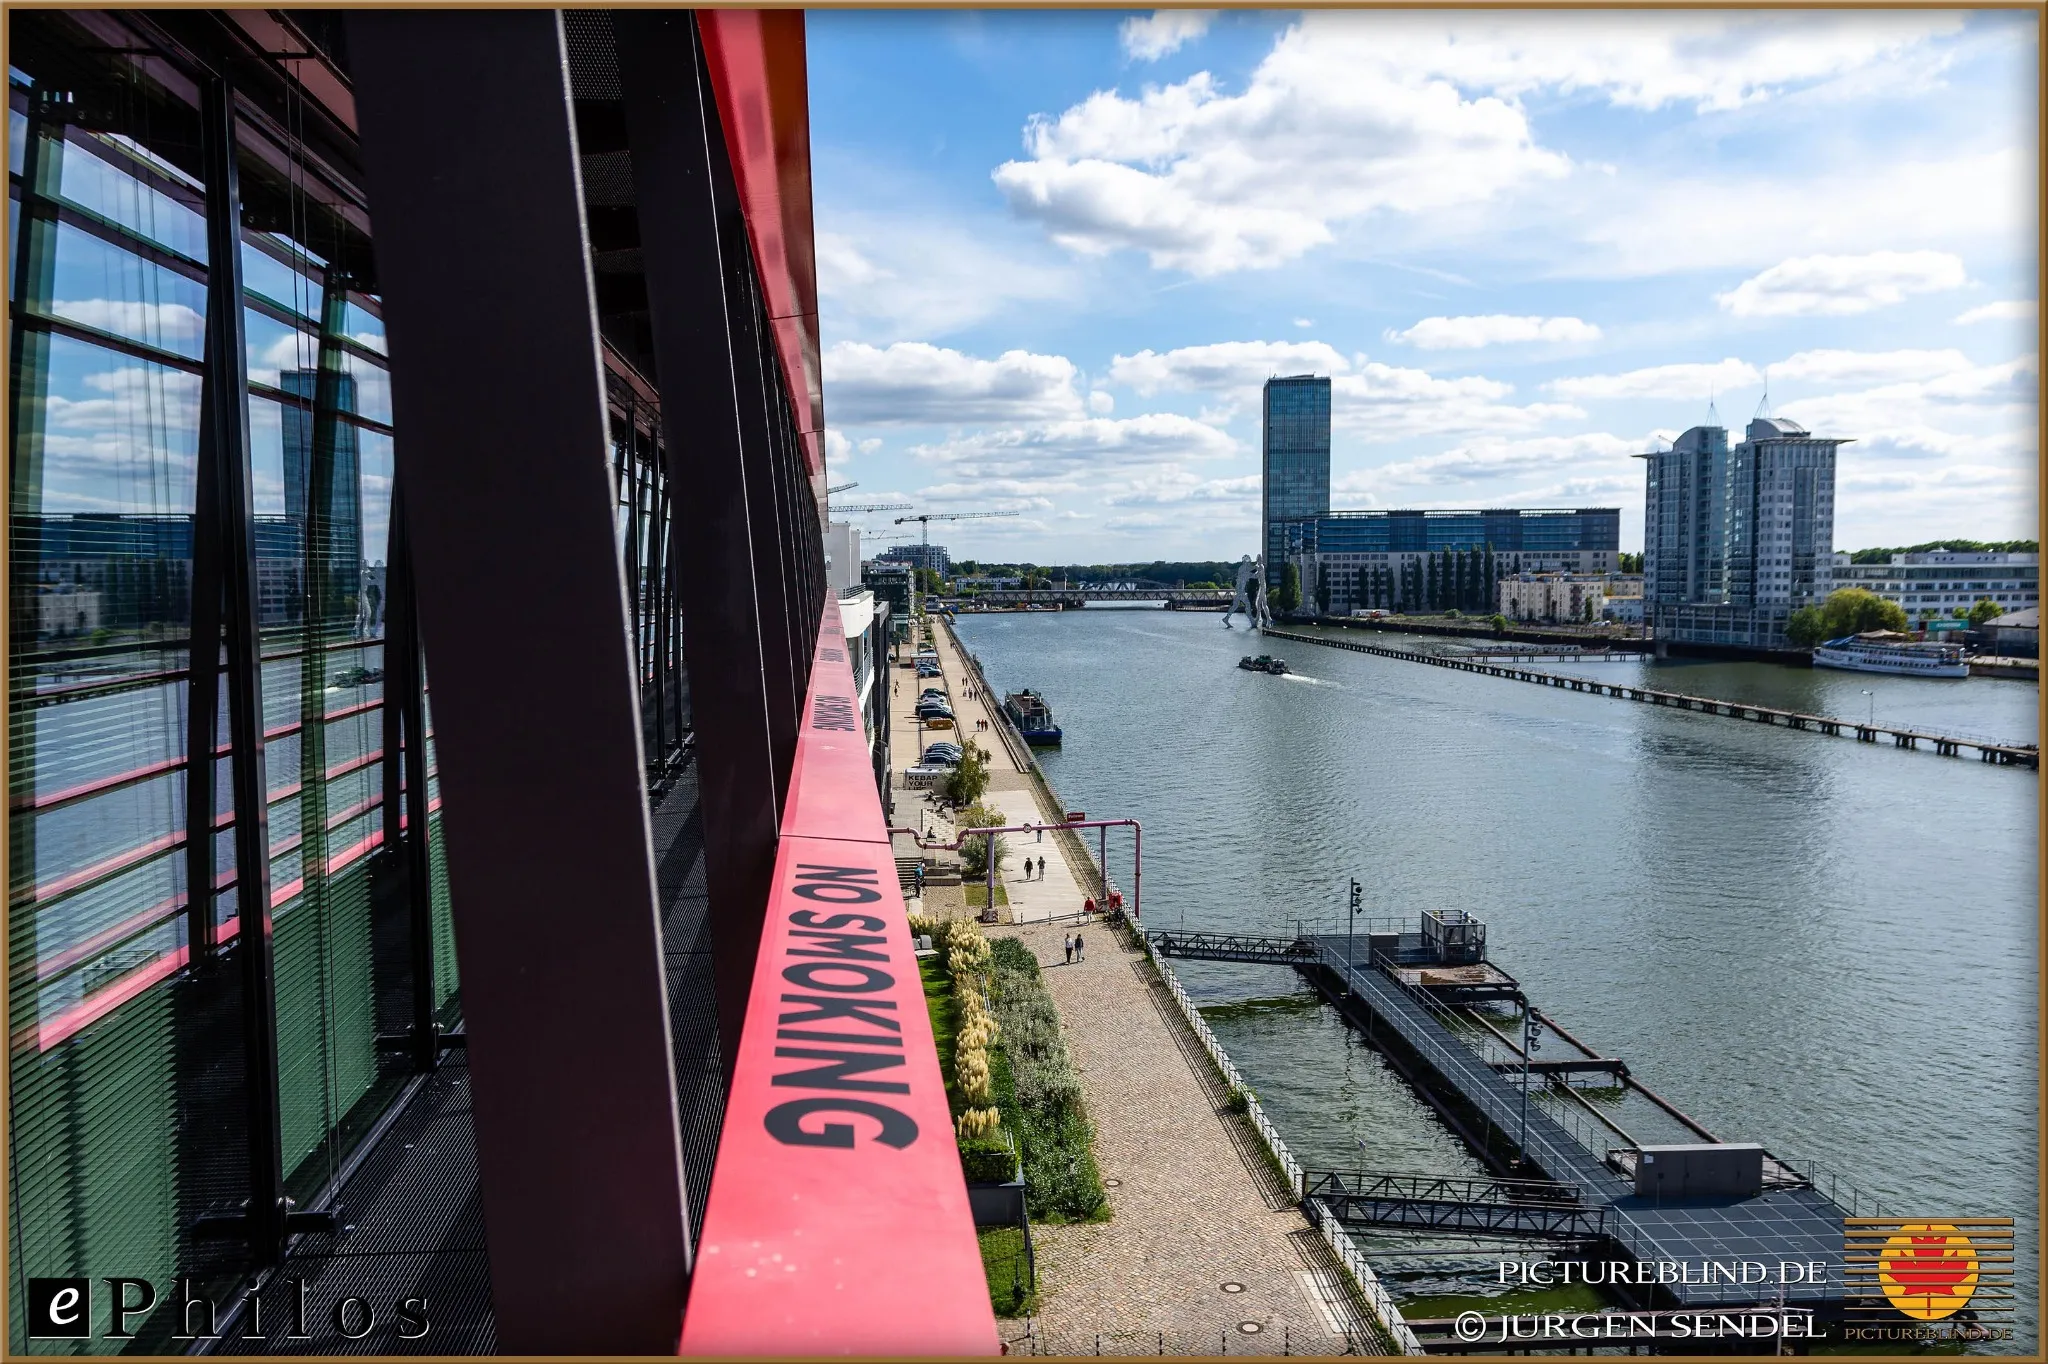 Blick auf den Außenbereich der Veranstaltungslocation in Berlin während des Ephilos Anwenderkreistreffens. Der Veranstaltungsort bietet eine malerische Aussicht auf den Fluss und die umliegenden Gebäude